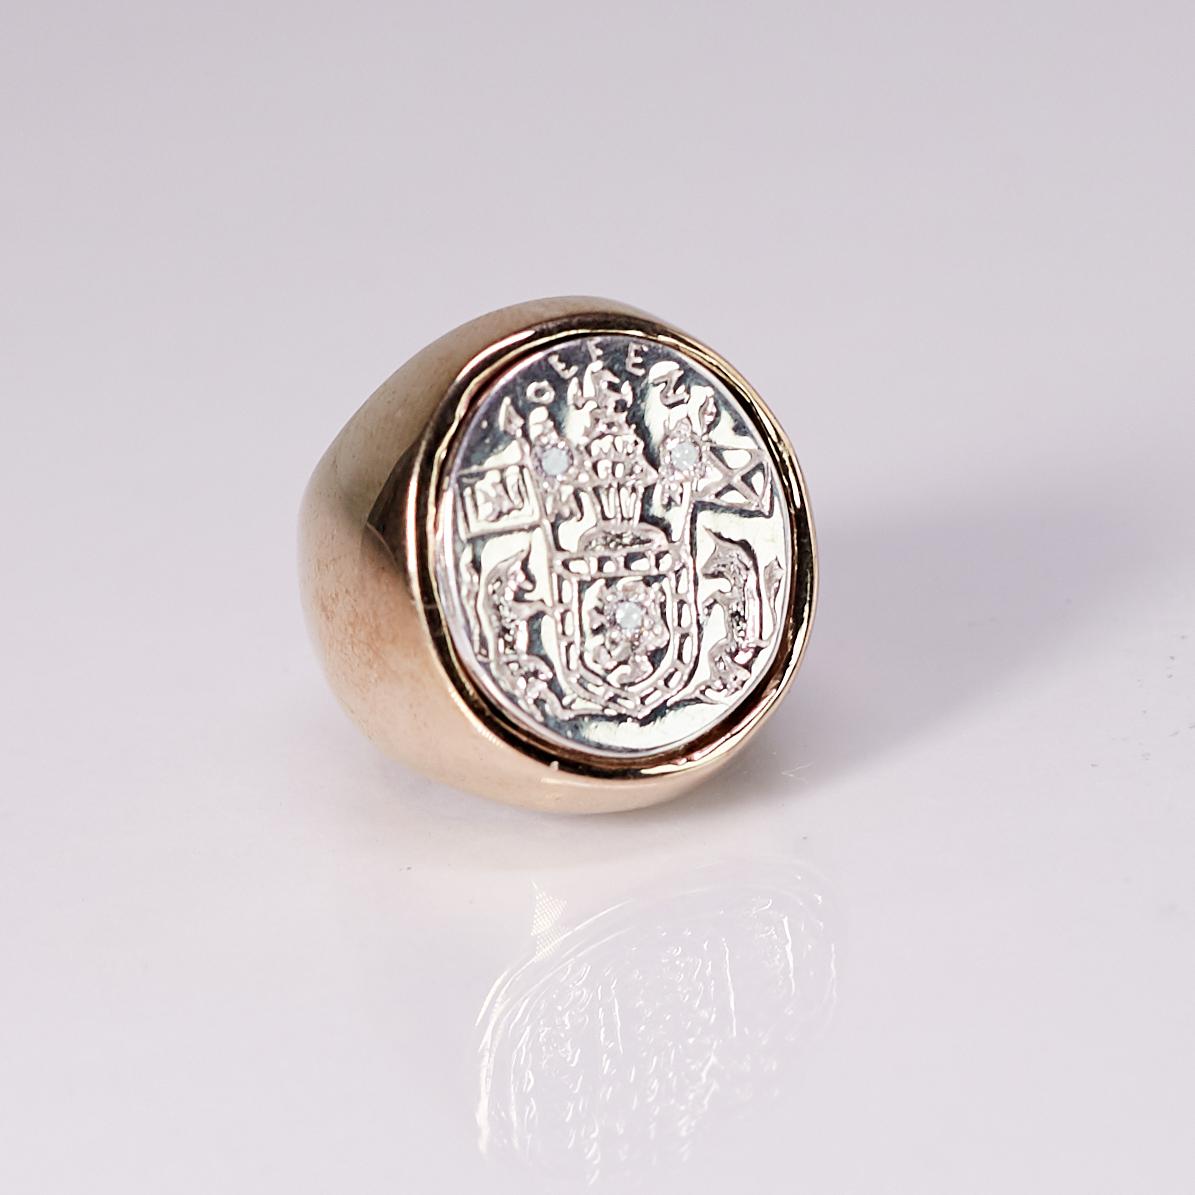 La bague chevalière avec écusson en diamant blanc en argent sterling et bronze J Dauphin peut être portée par les femmes ou les hommes.

Inspiré de la bague de la reine Marie d'Écosse. Bague sigillaire en or ; gravée ; épaules ornées de fleurs et de